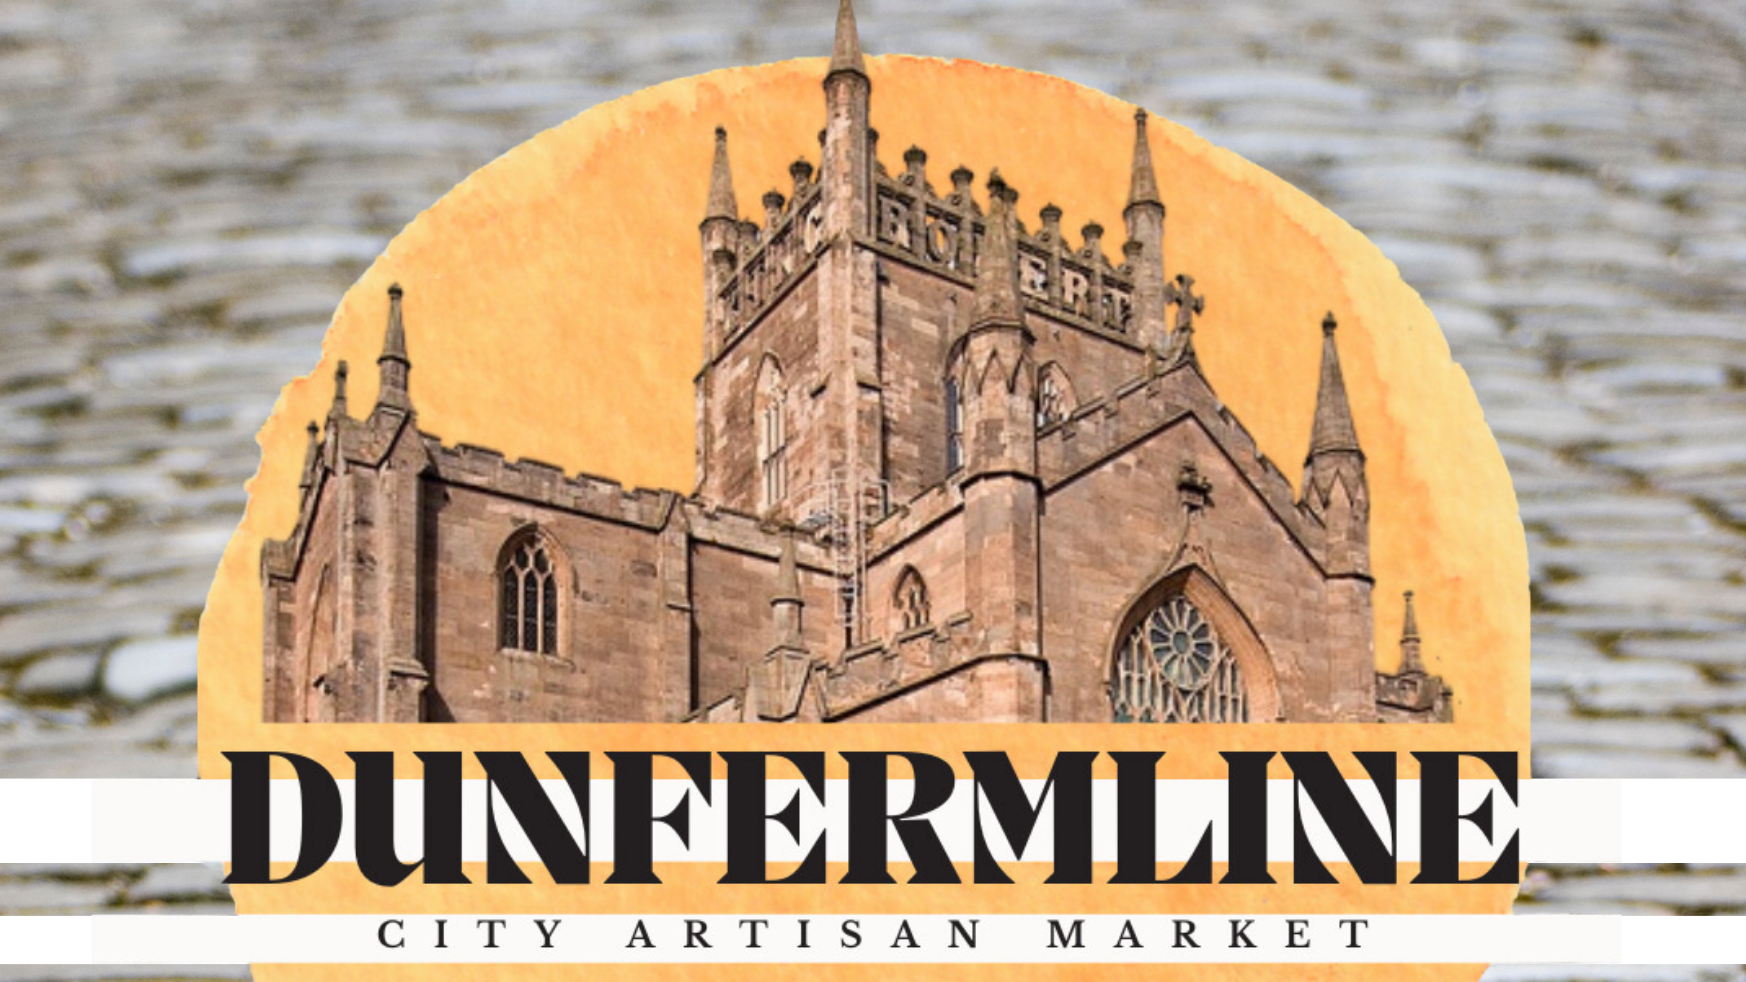 Dunfermline City Artisan Market - September